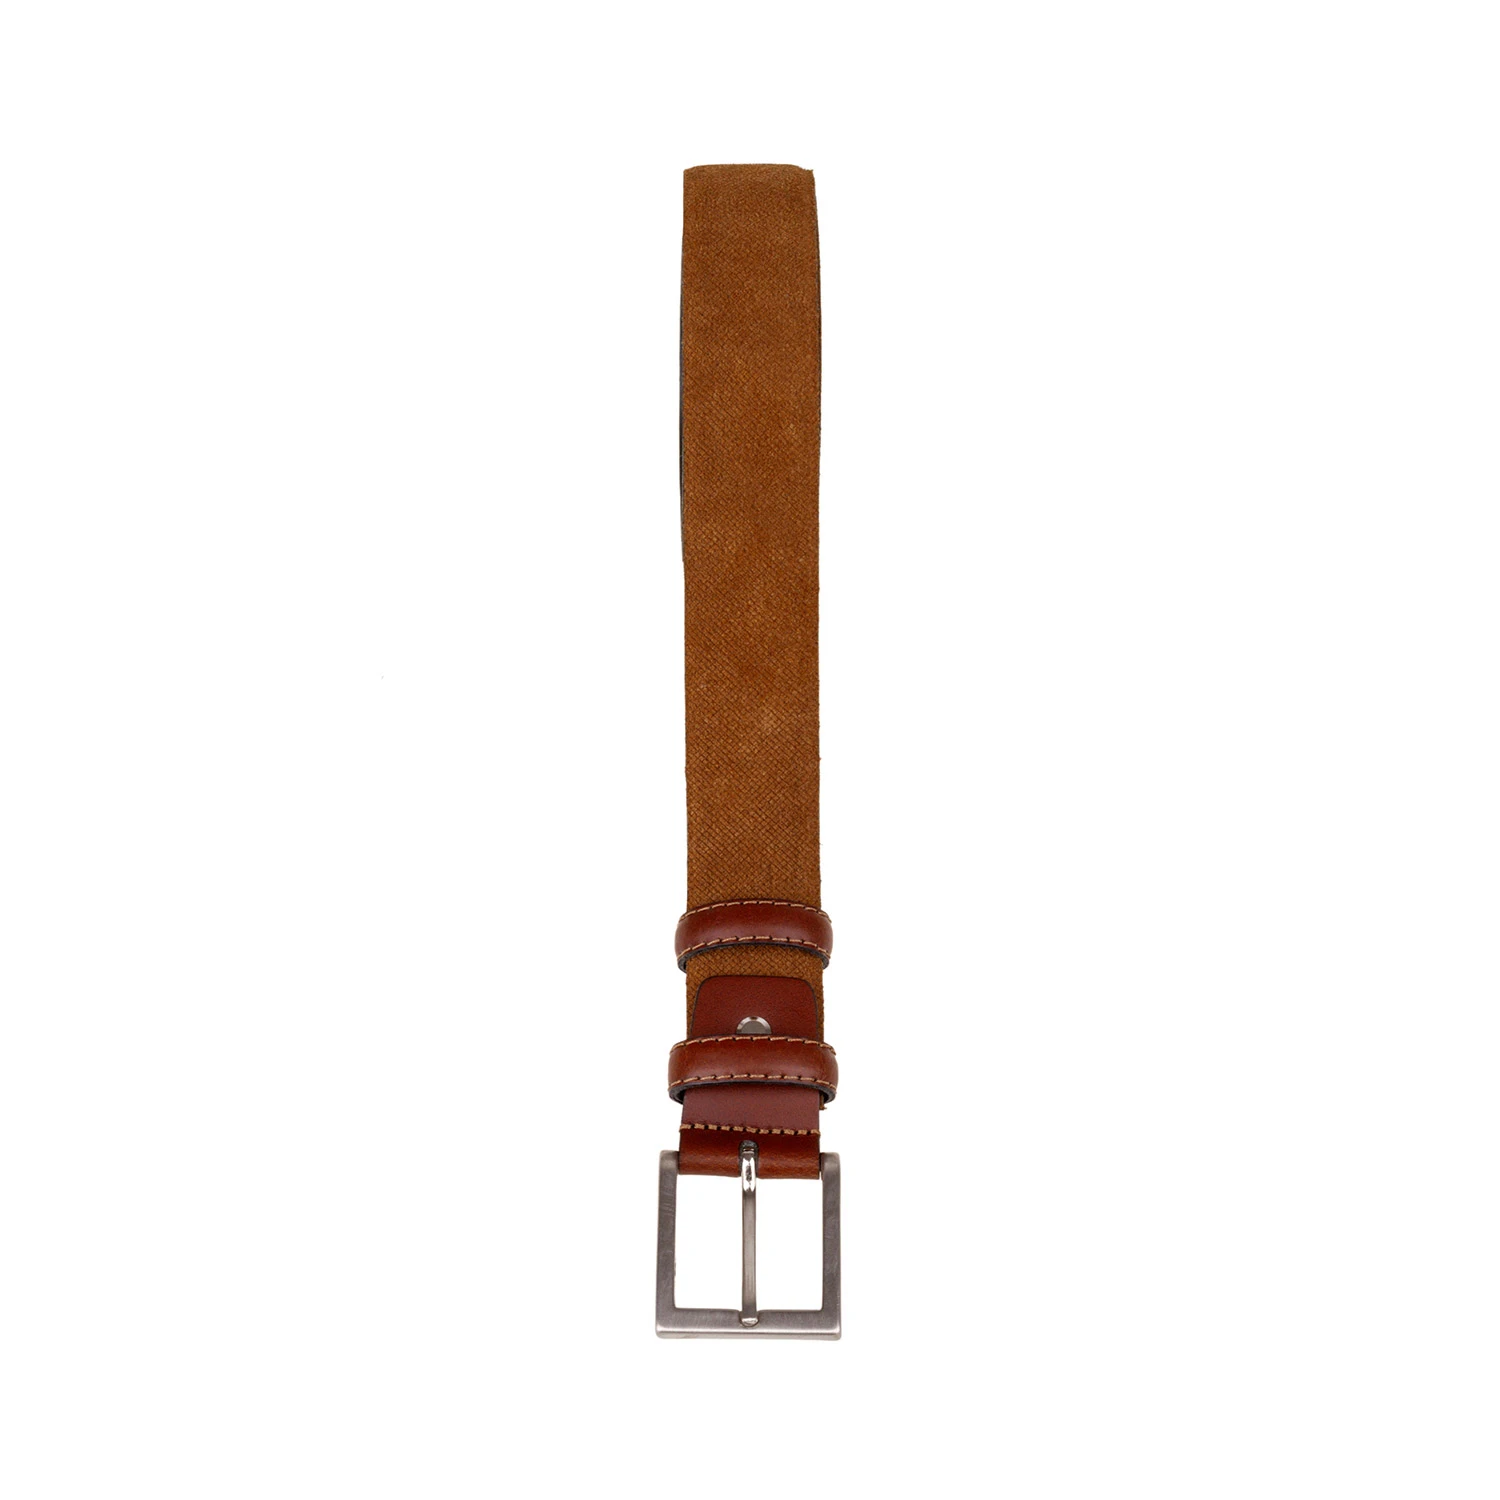 Alinear metodología altavoz Cinturones para Hombre de Cuero, Fabricado en España, Largo de 115cm,  Cinturón Color Marrón y Cuero,